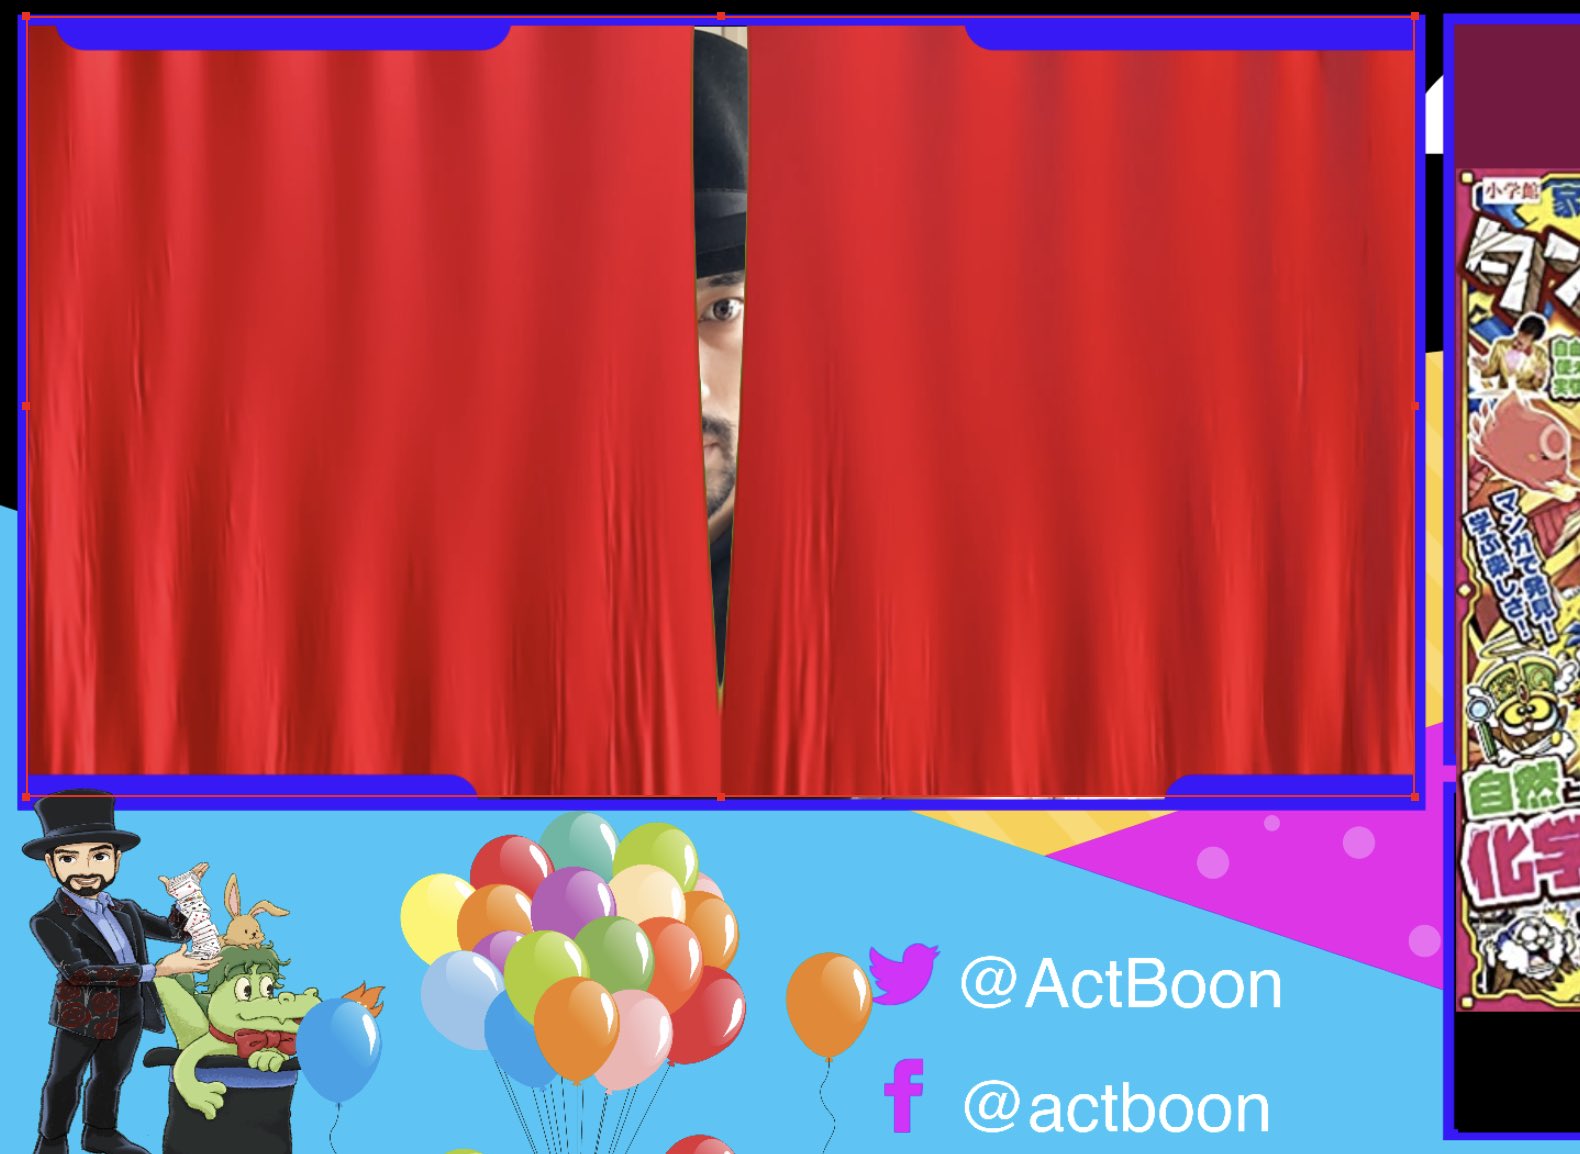 Actboon Actboon Twitter